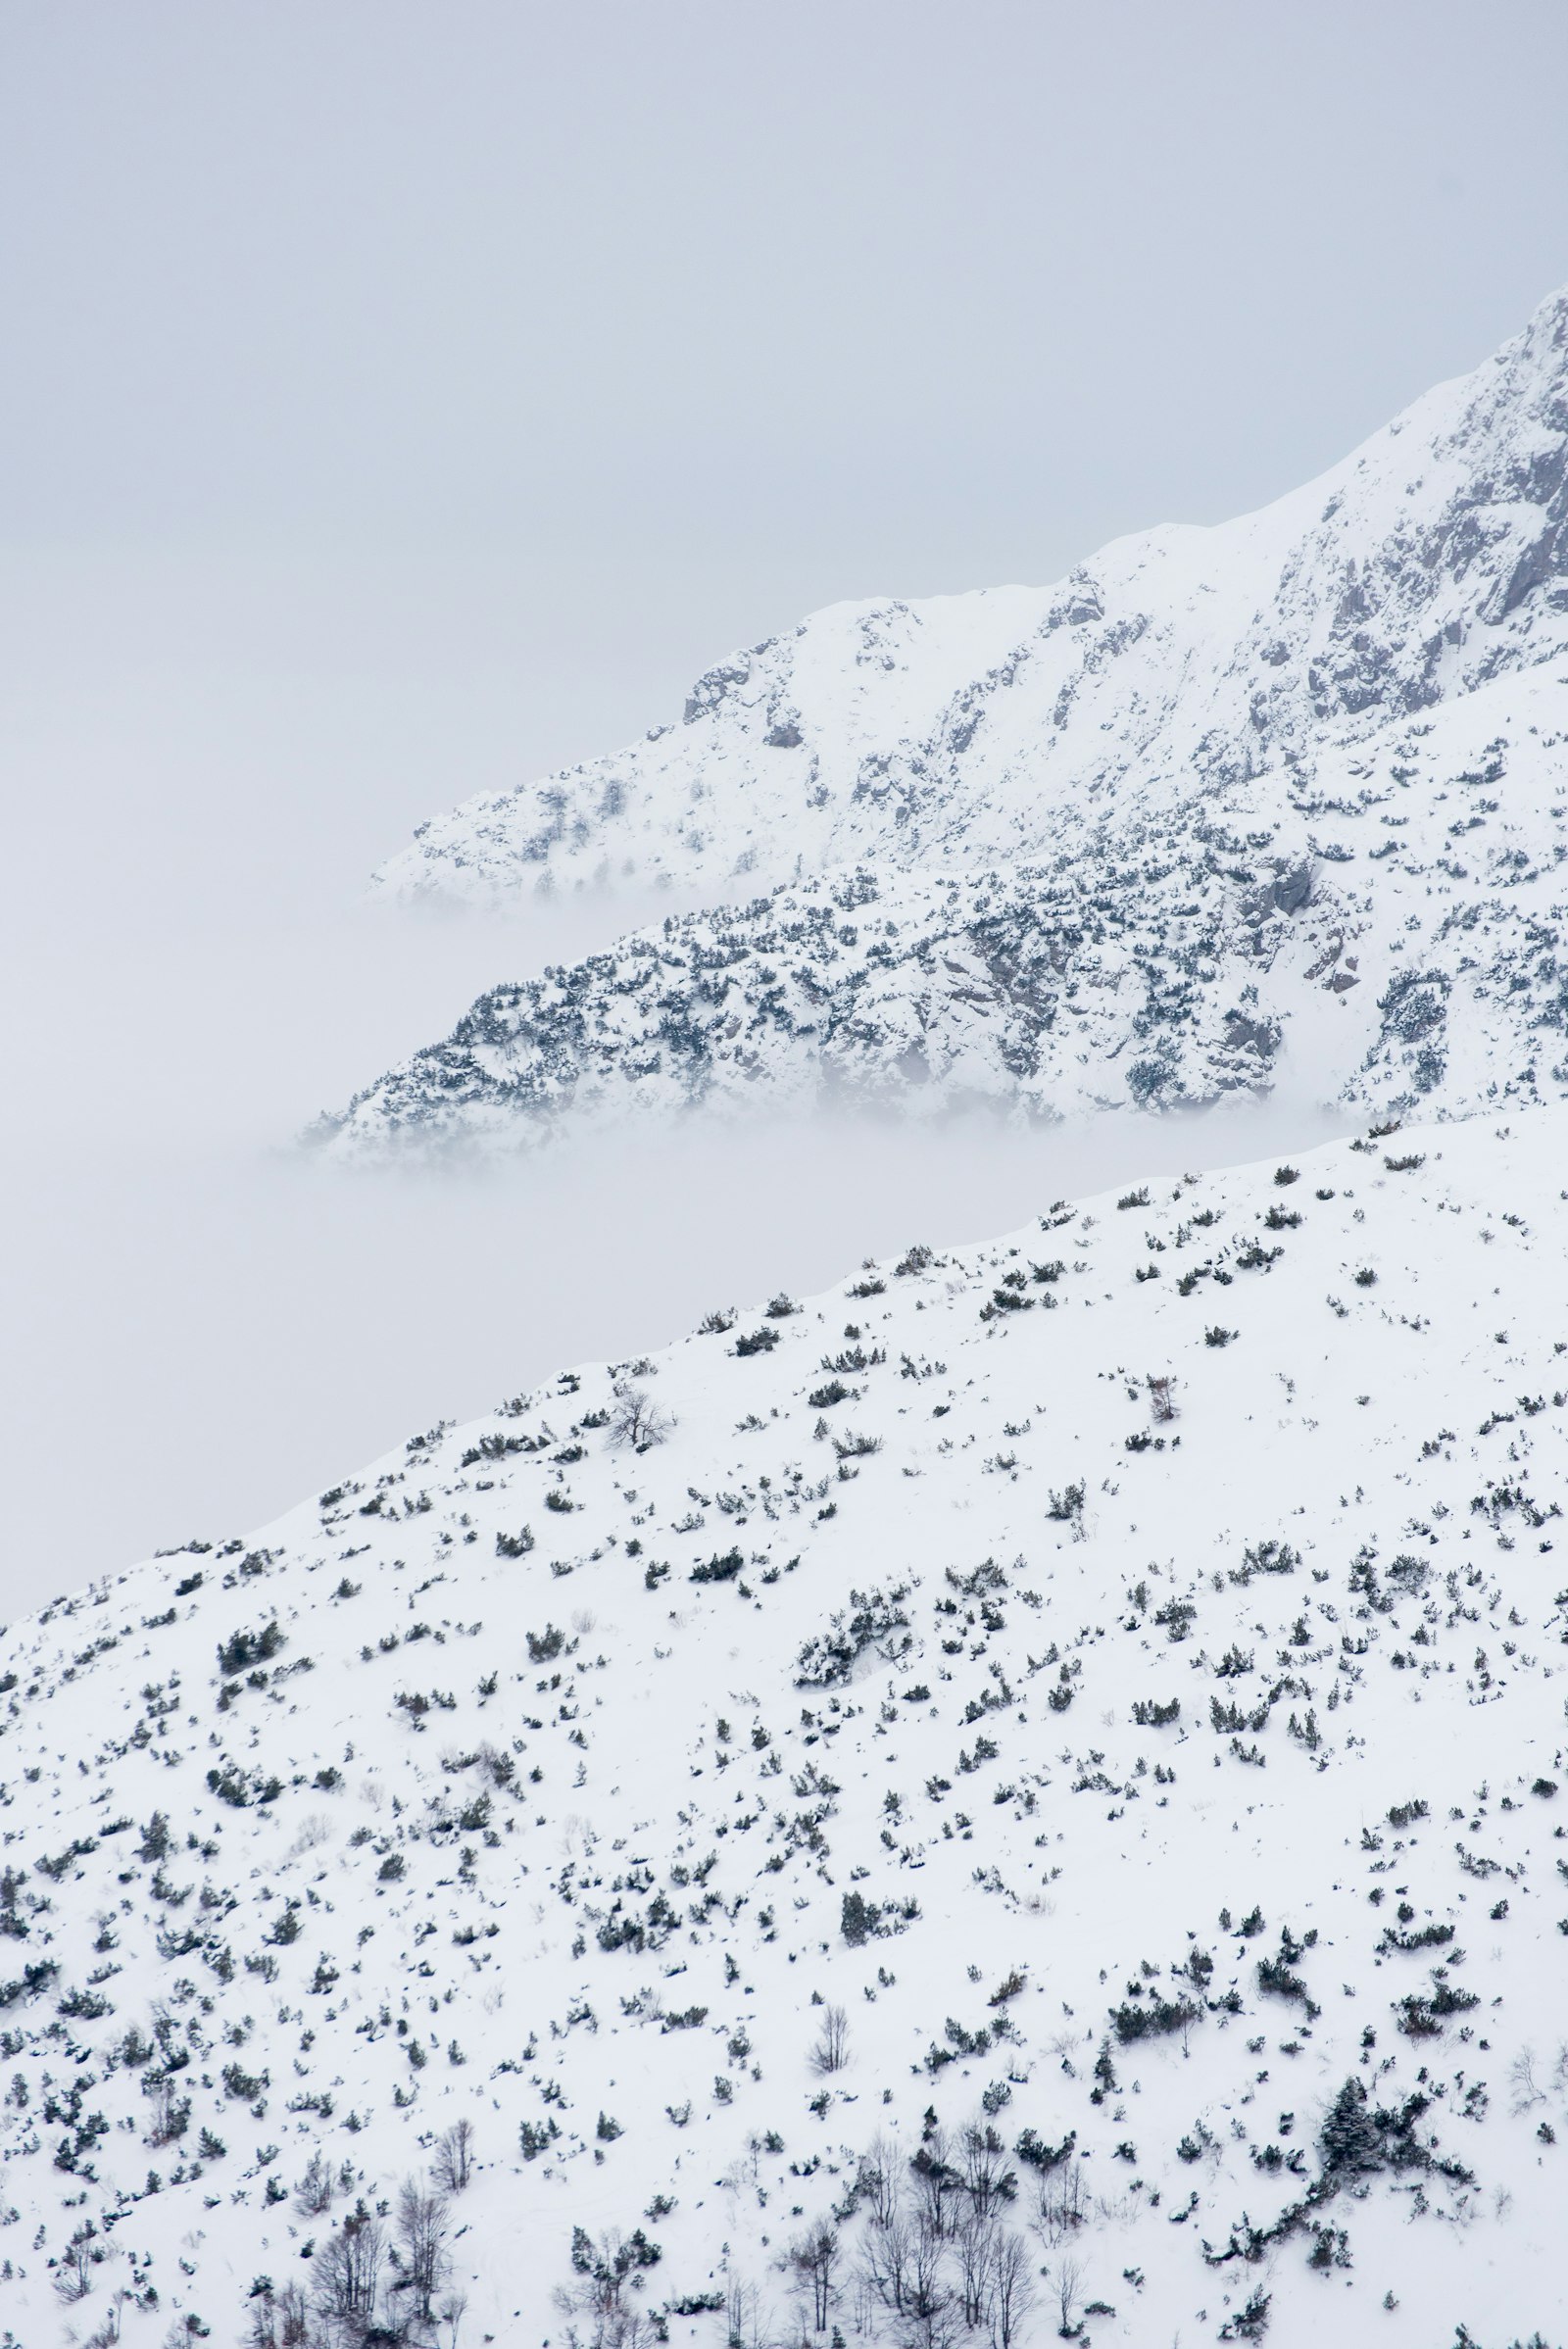 Nikon AF-S Nikkor 70-300mm F4.5-5.6G VR sample photo. Landscape photography of mountain photography